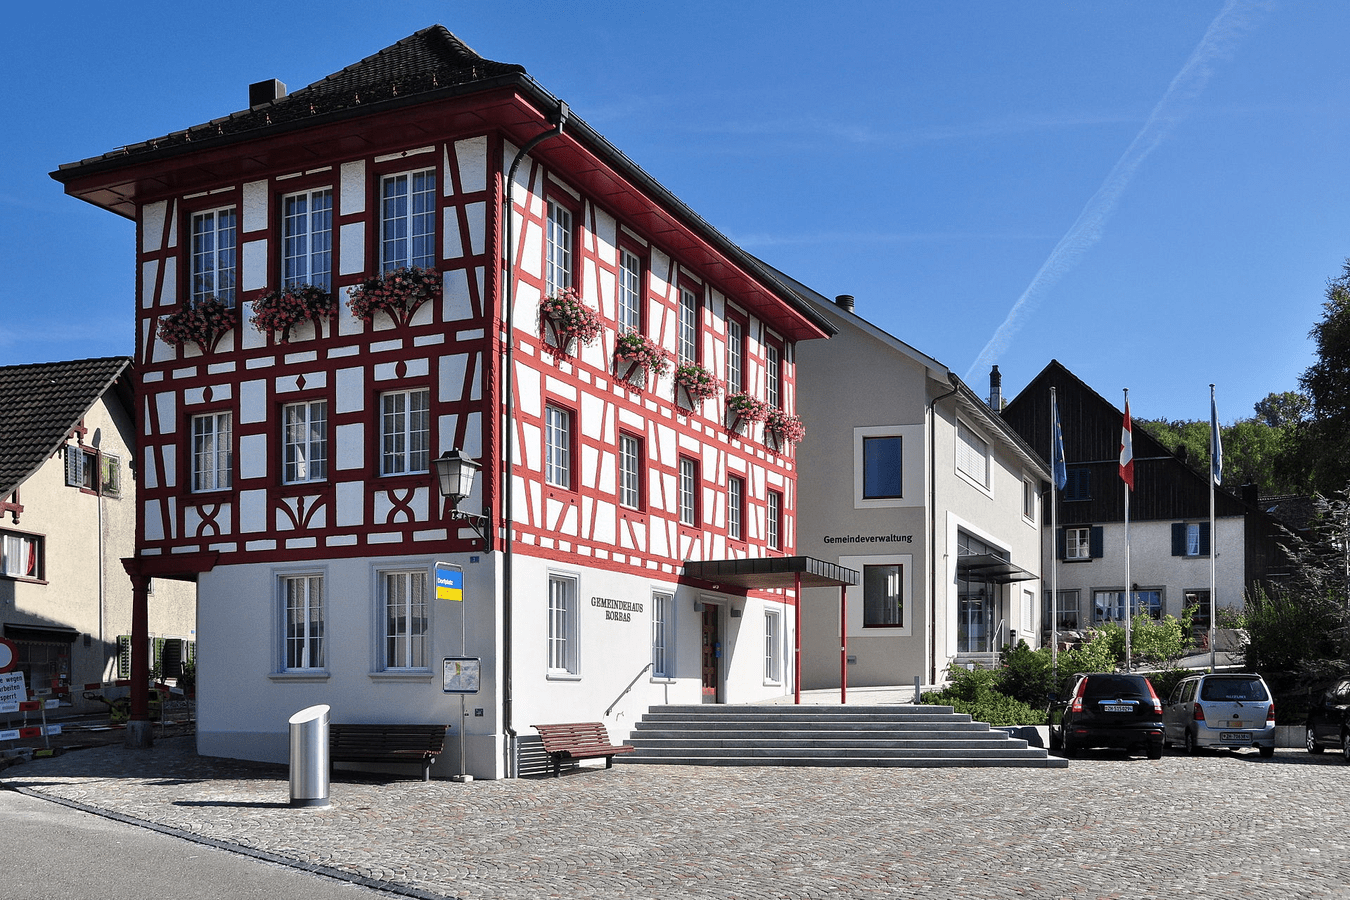 Gemeindehaus-Gemeindeverwaltung in Rorbas